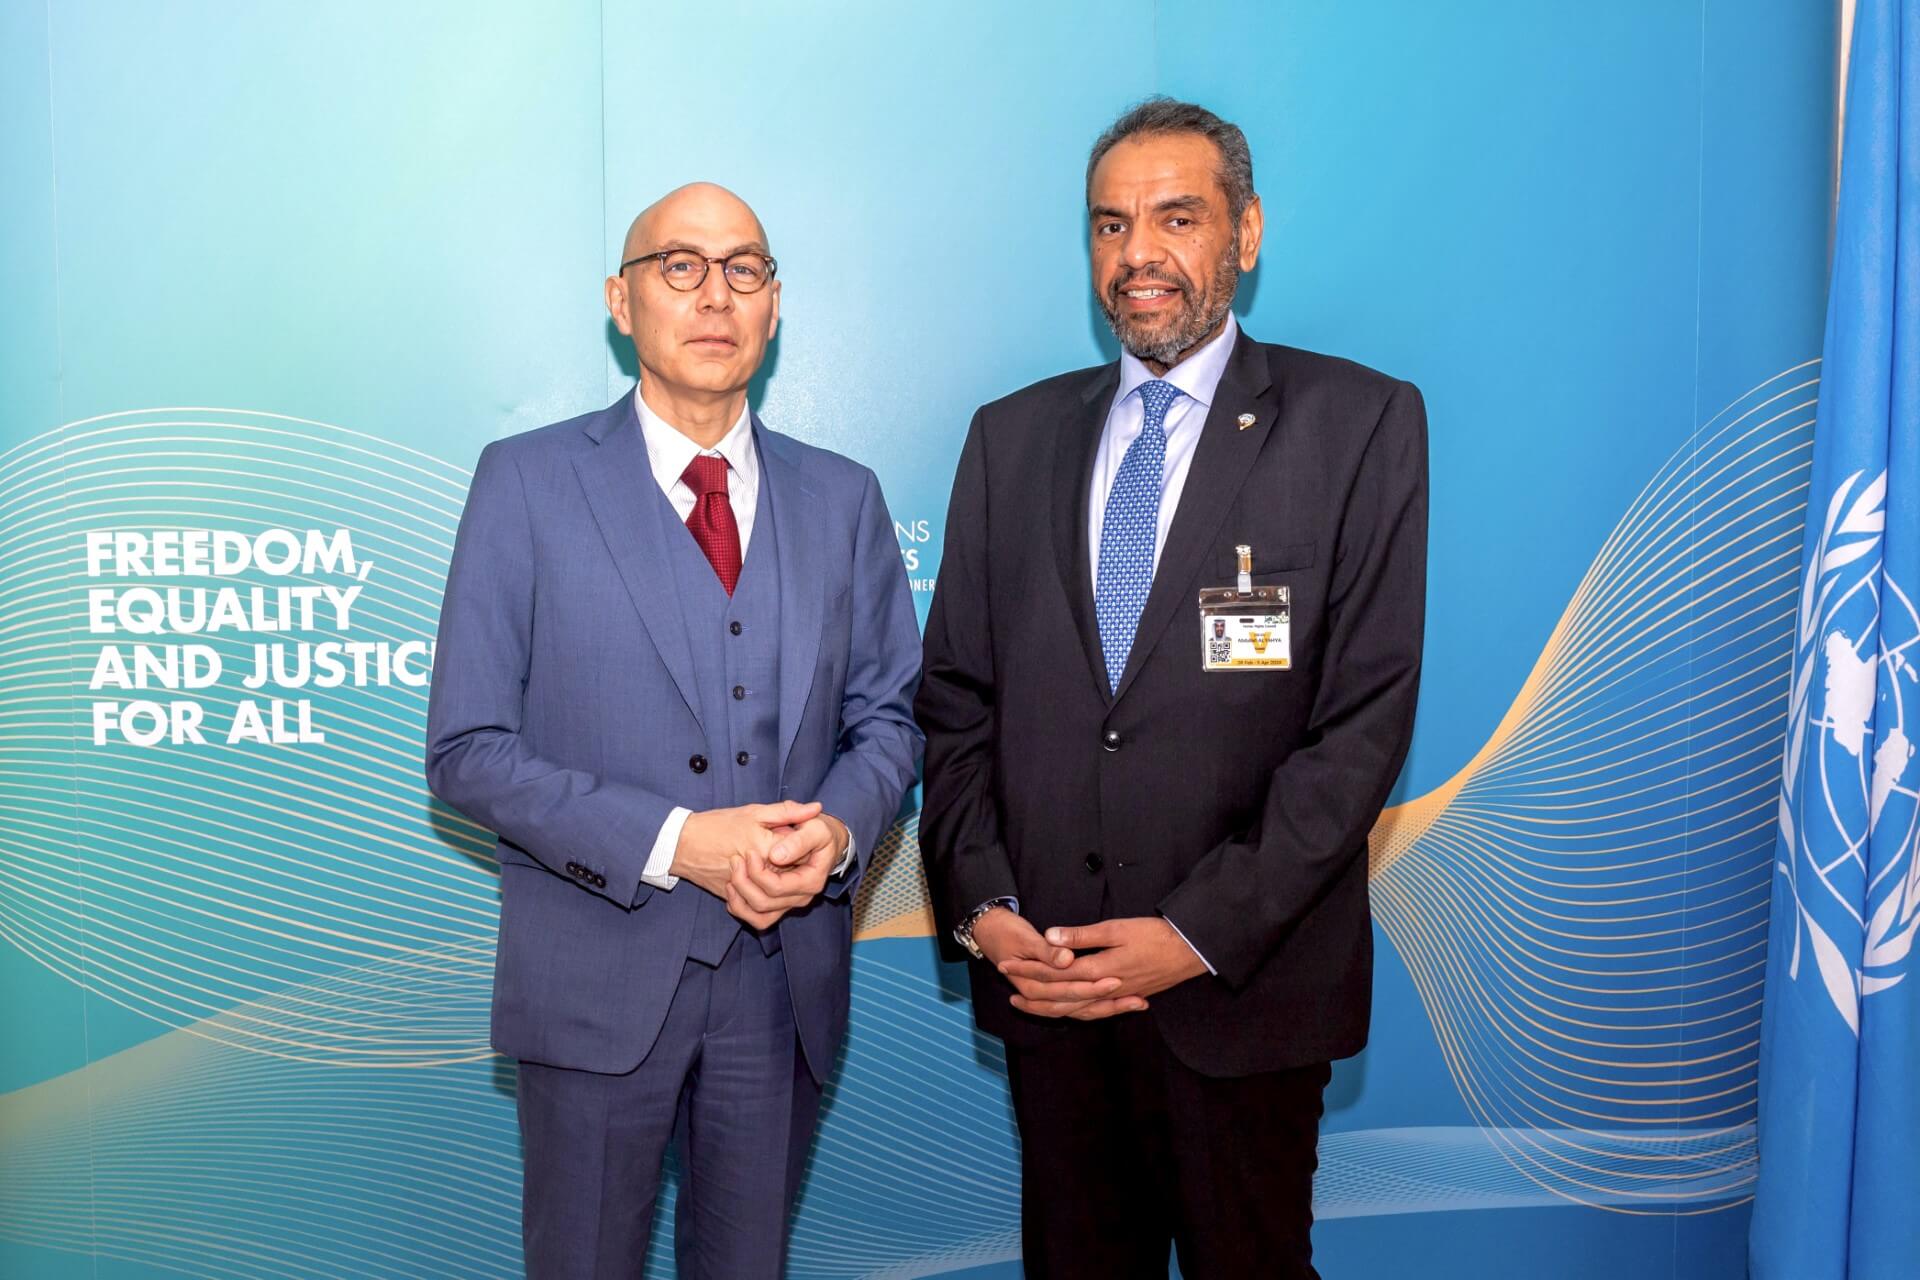 وزير الخارجية عبدالله اليحيا مع المفوض السامي للأمم المتحدة لحقوق الإنسان فولكر تورك (كونا)